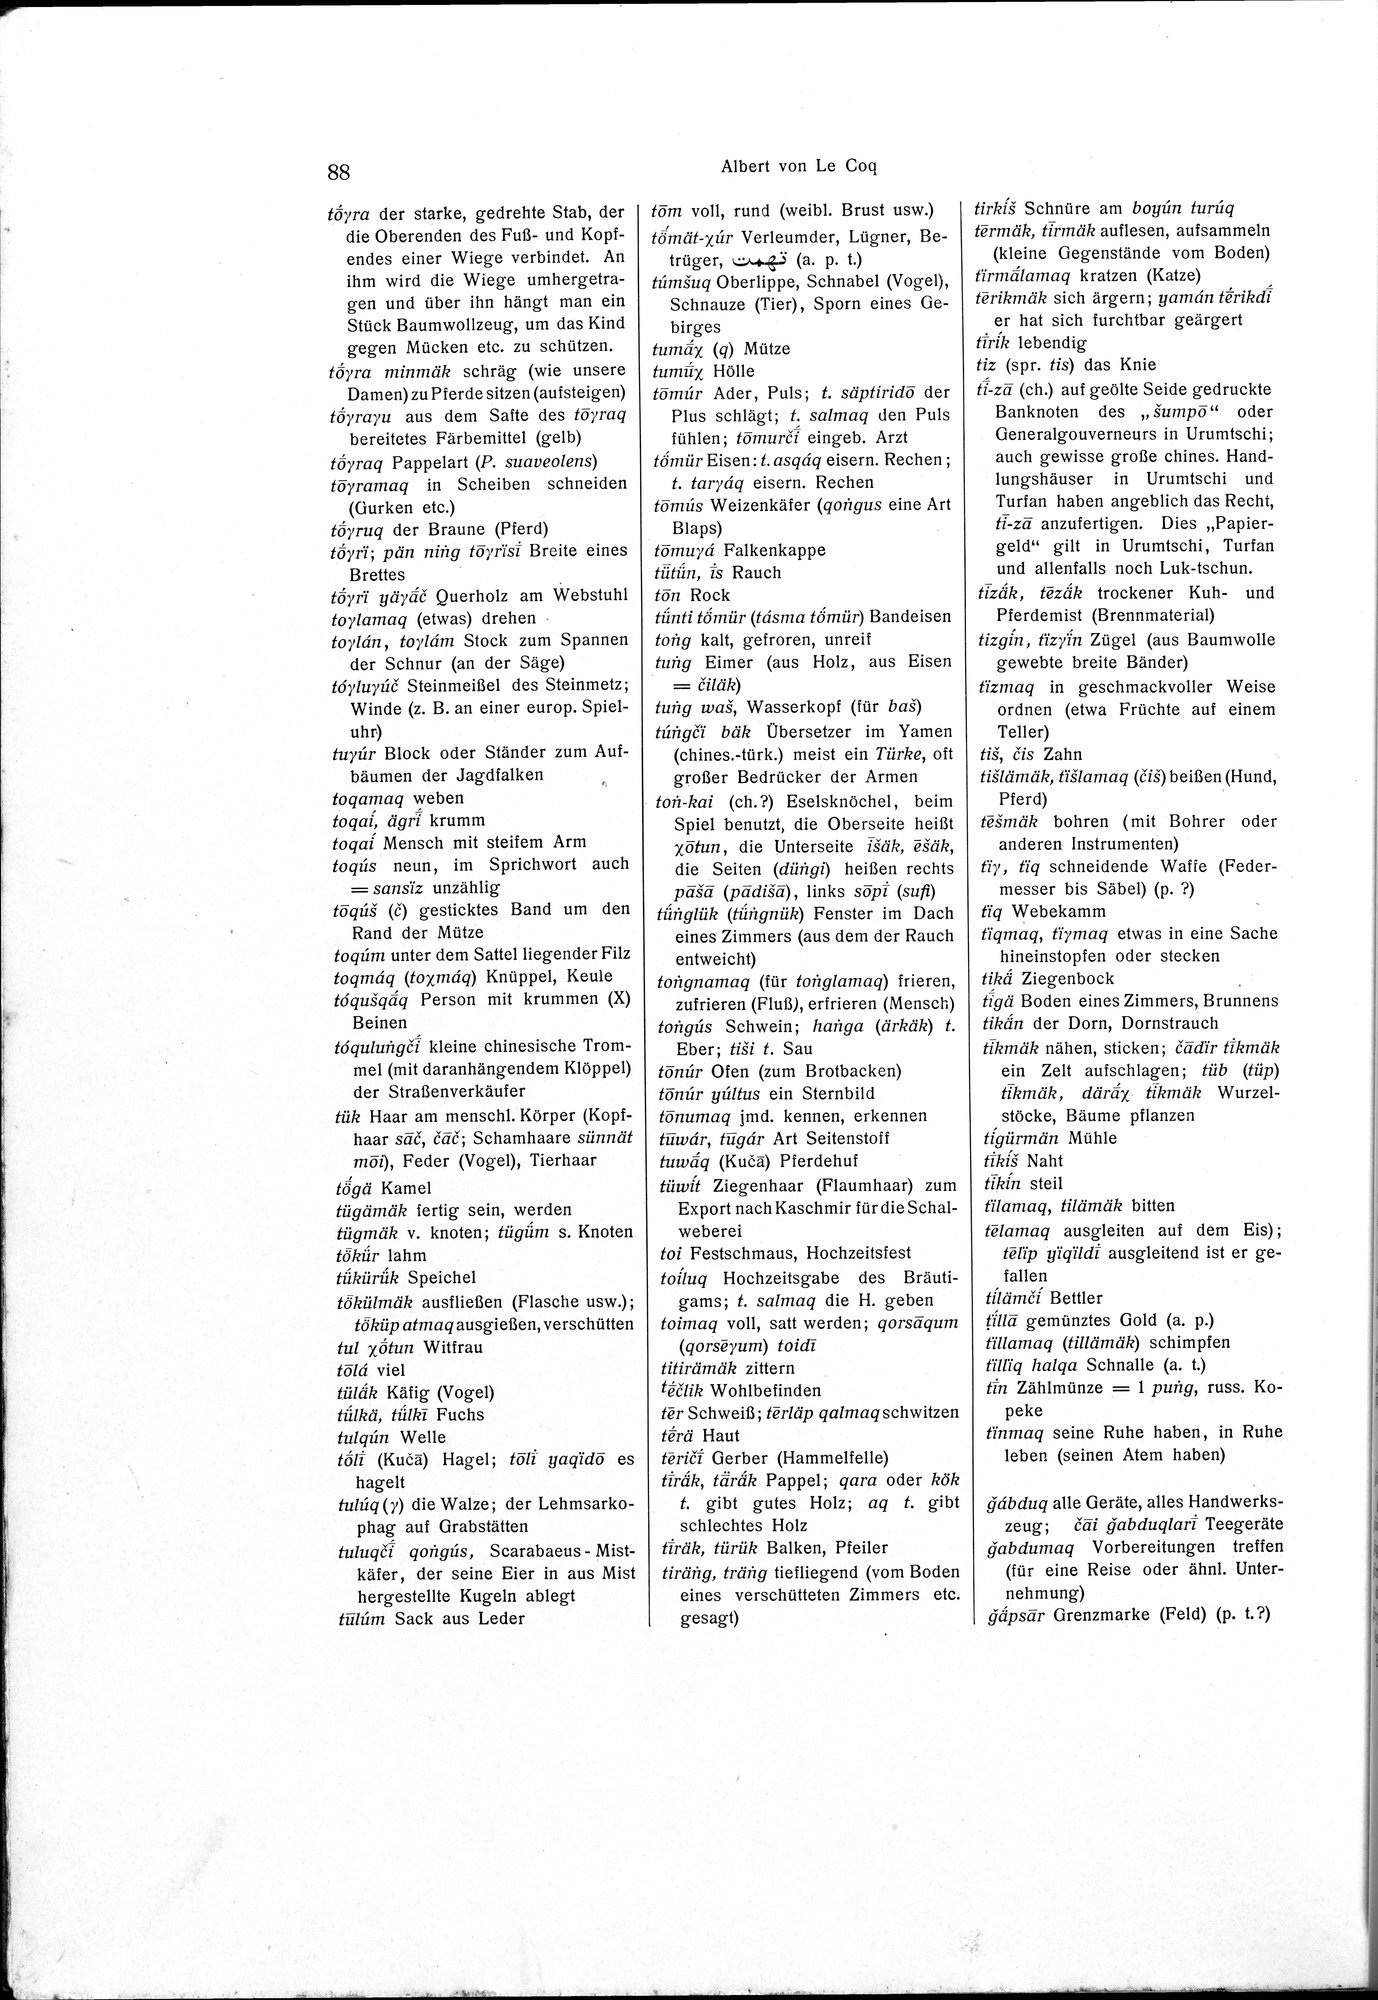 Sprichwörter und Lieder aus der Gegend von Turfan : vol.1 / Page 102 (Grayscale High Resolution Image)